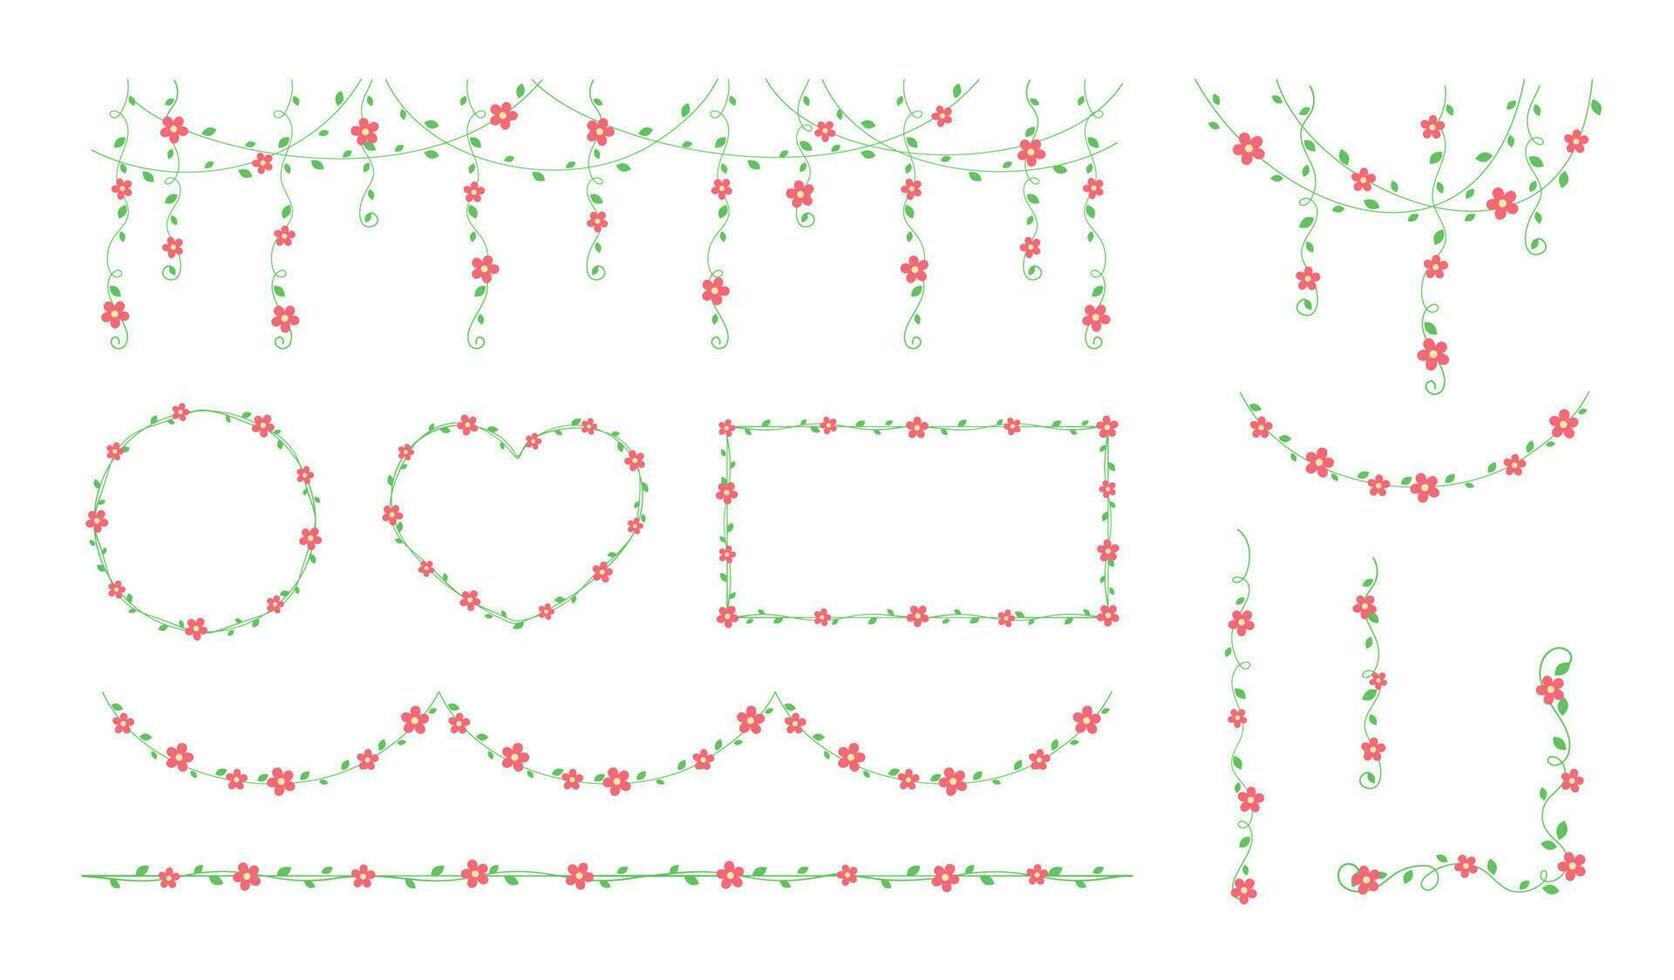 wijnstokken met rood bloemen kaders en grenzen, hangende Liaan gordijn ontwerp, botanisch elementen vector illustratie reeks